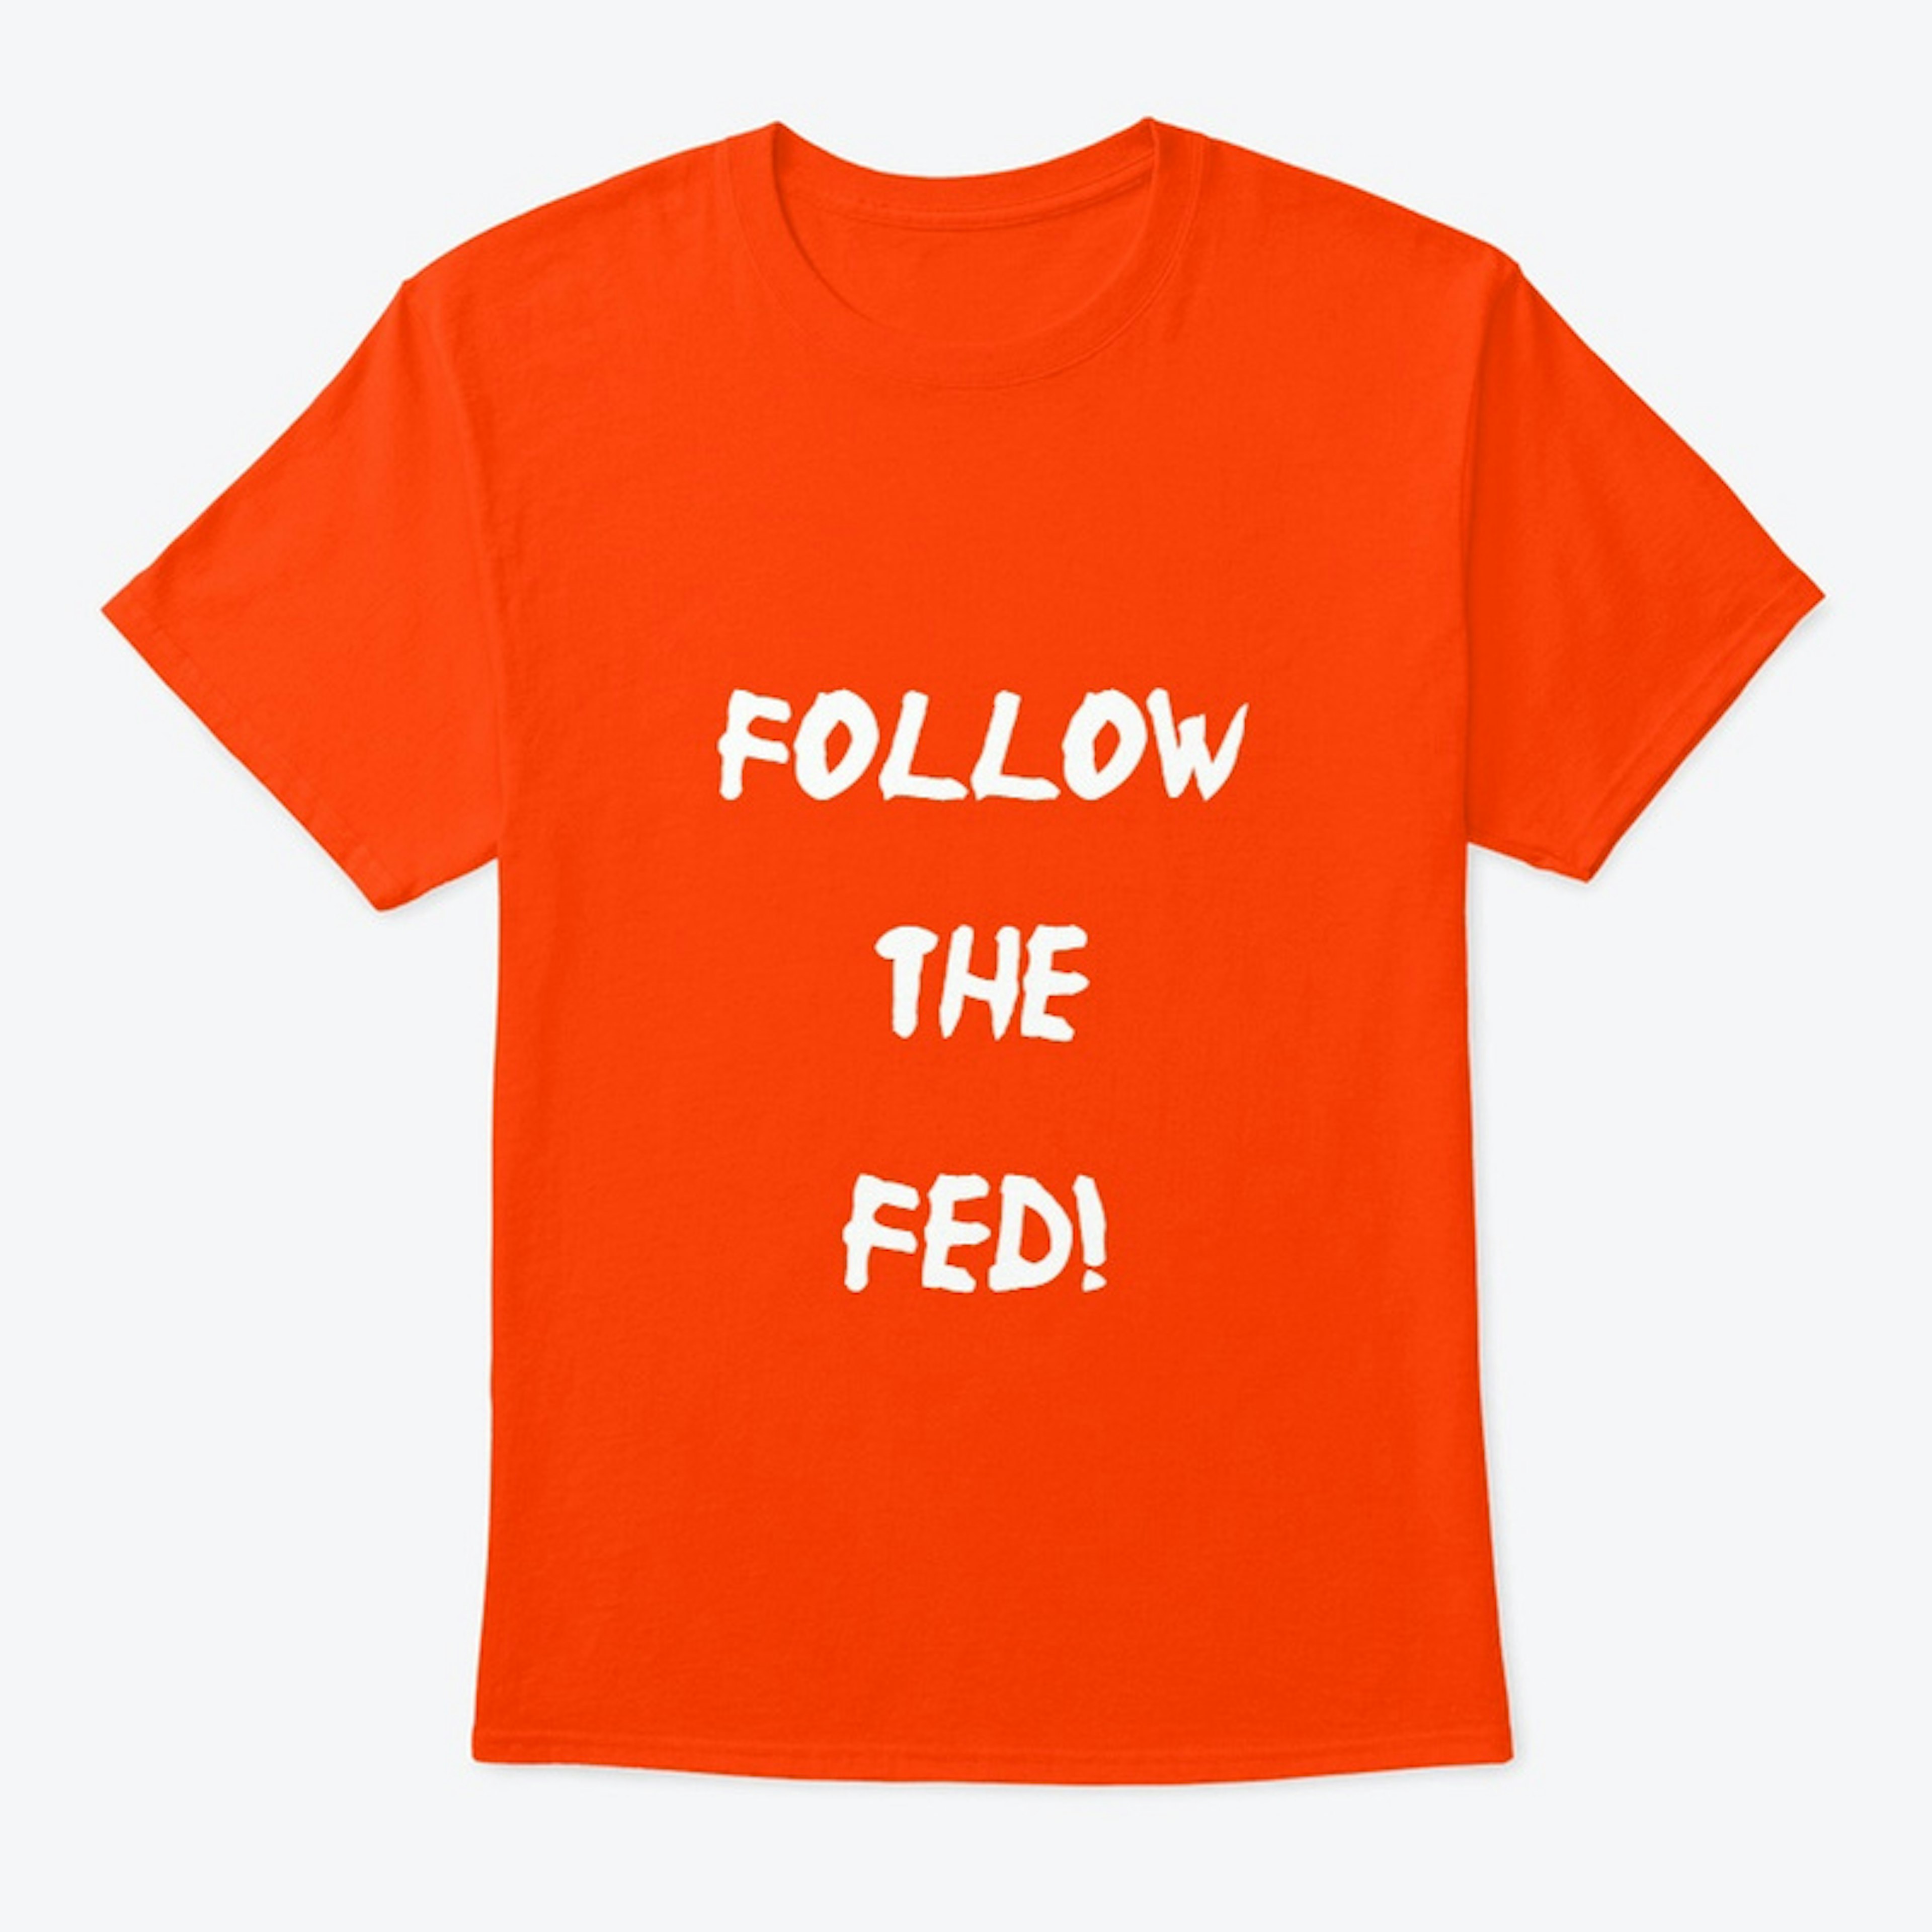 Follow the Fed!